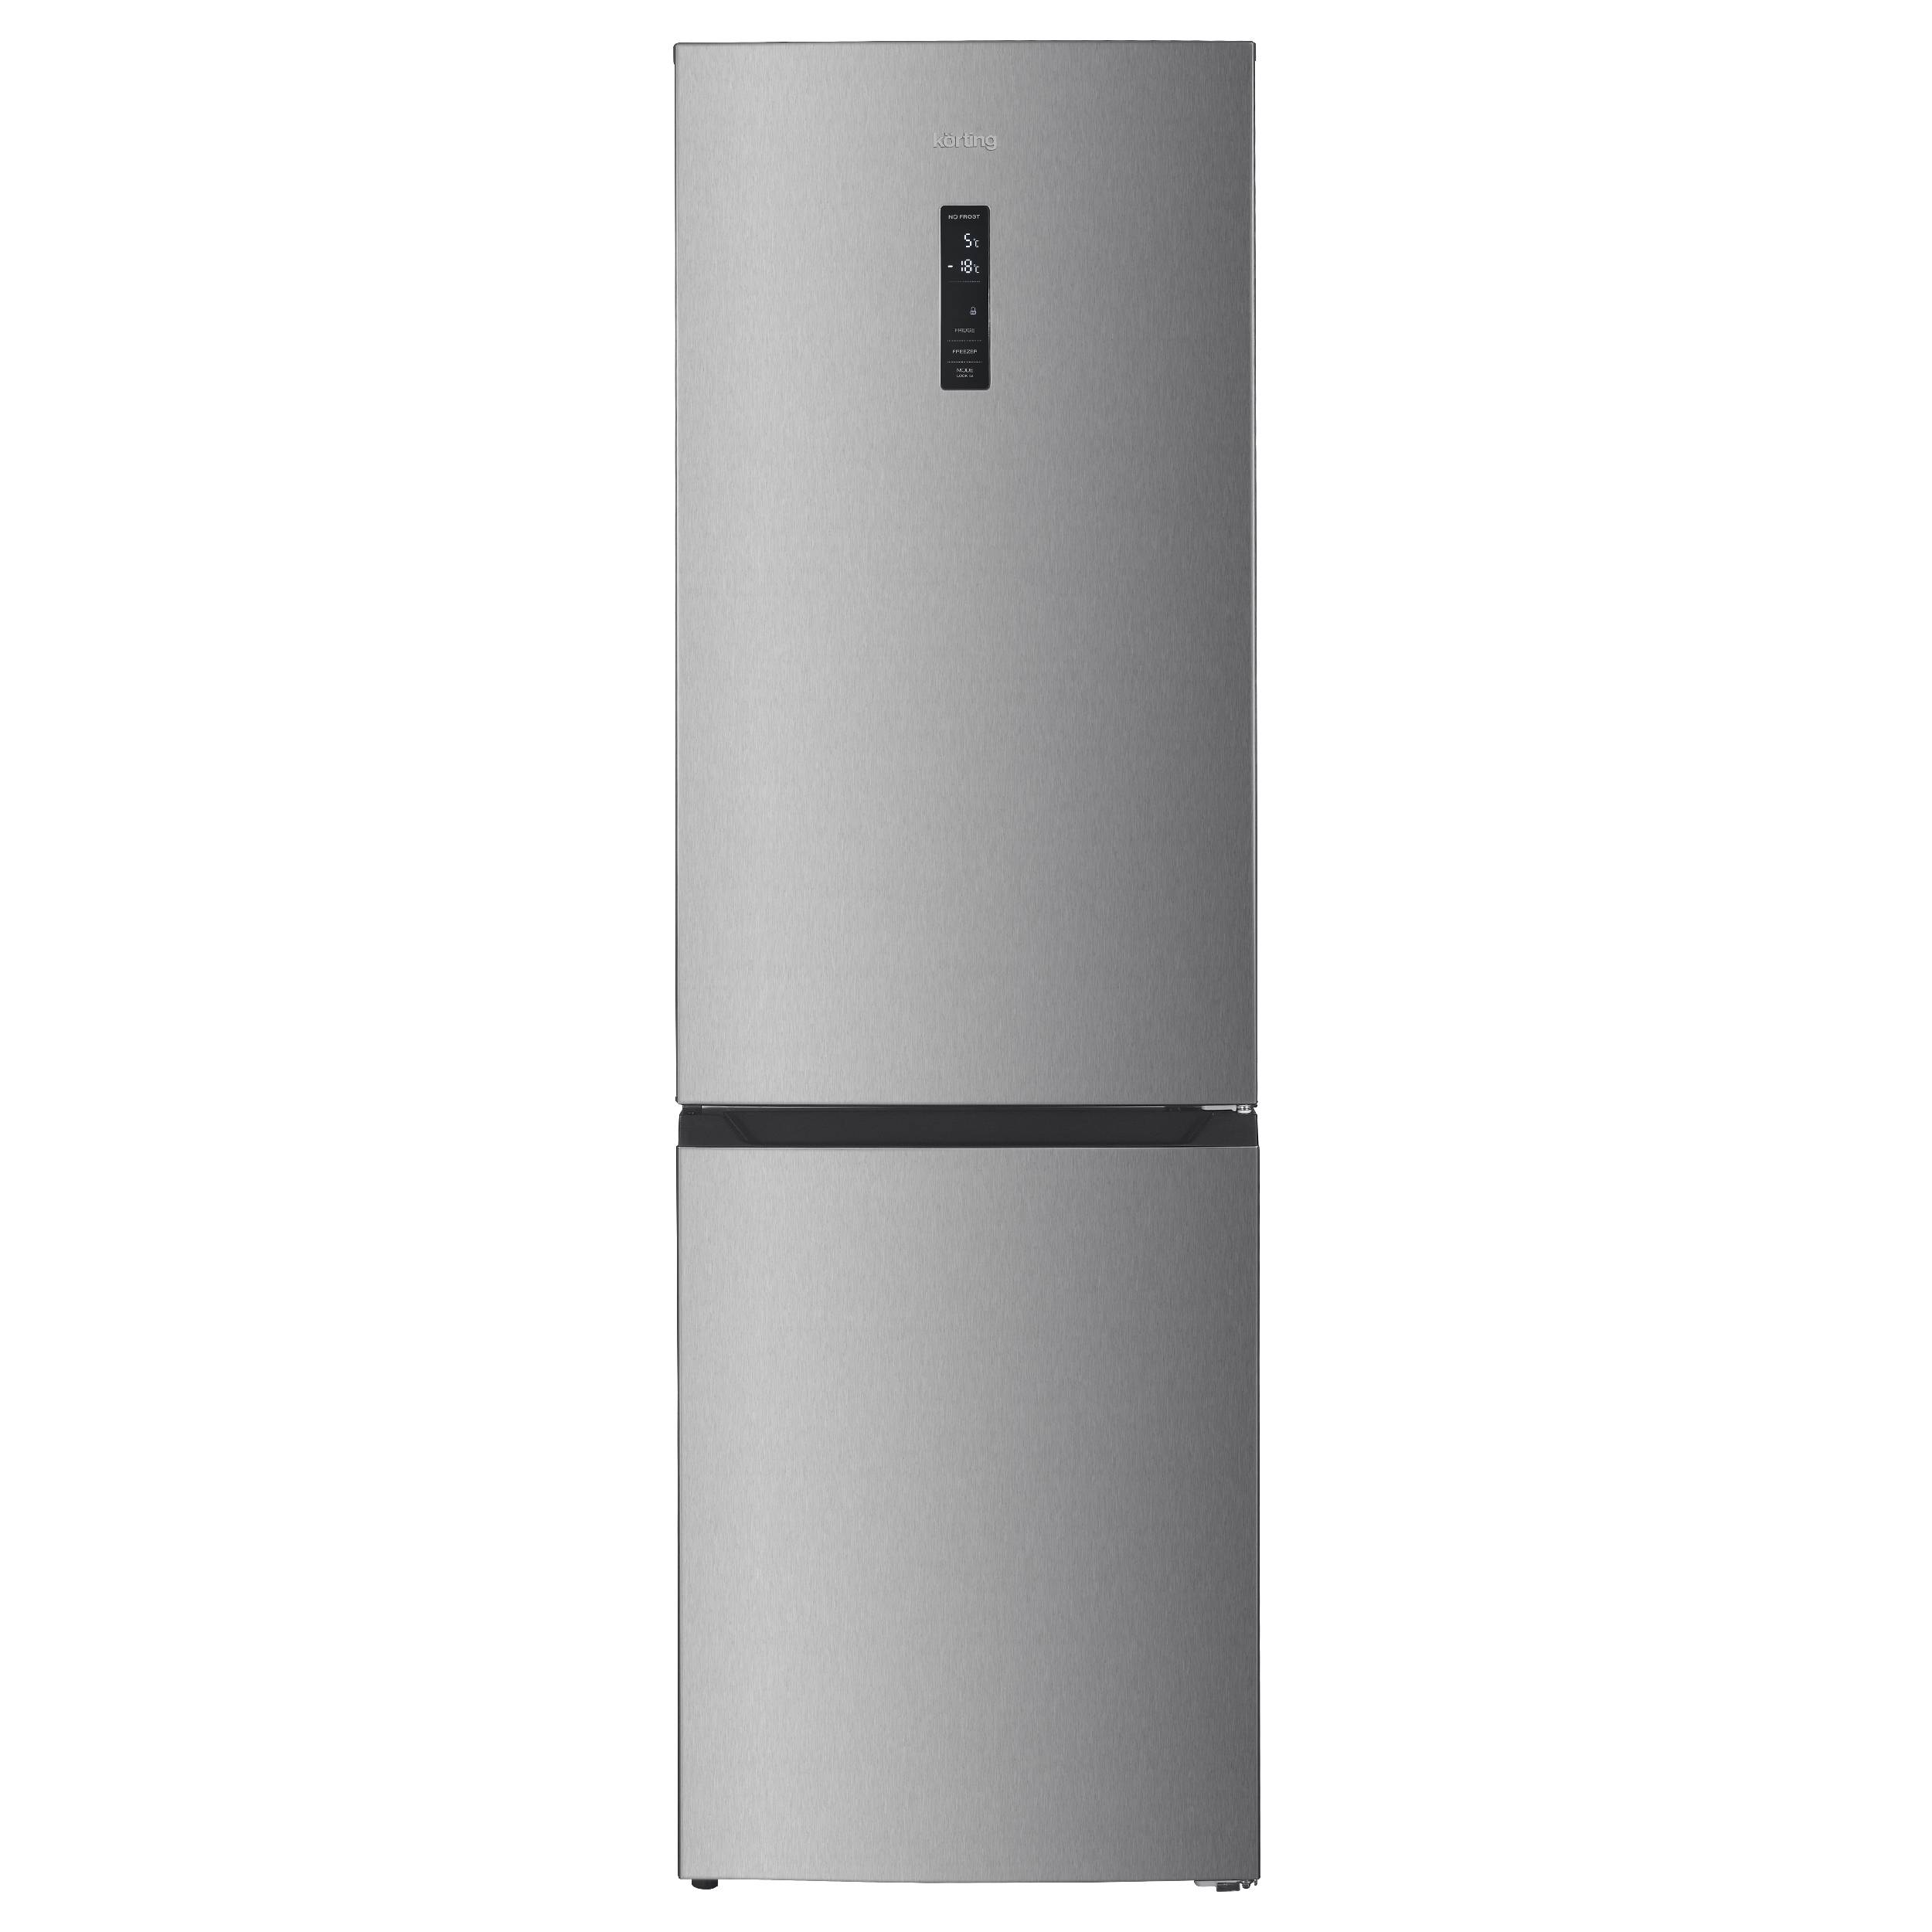 Холодильник Korting KNFC 62980 X серебристый, серый холодильник lg gc b459slcl серый